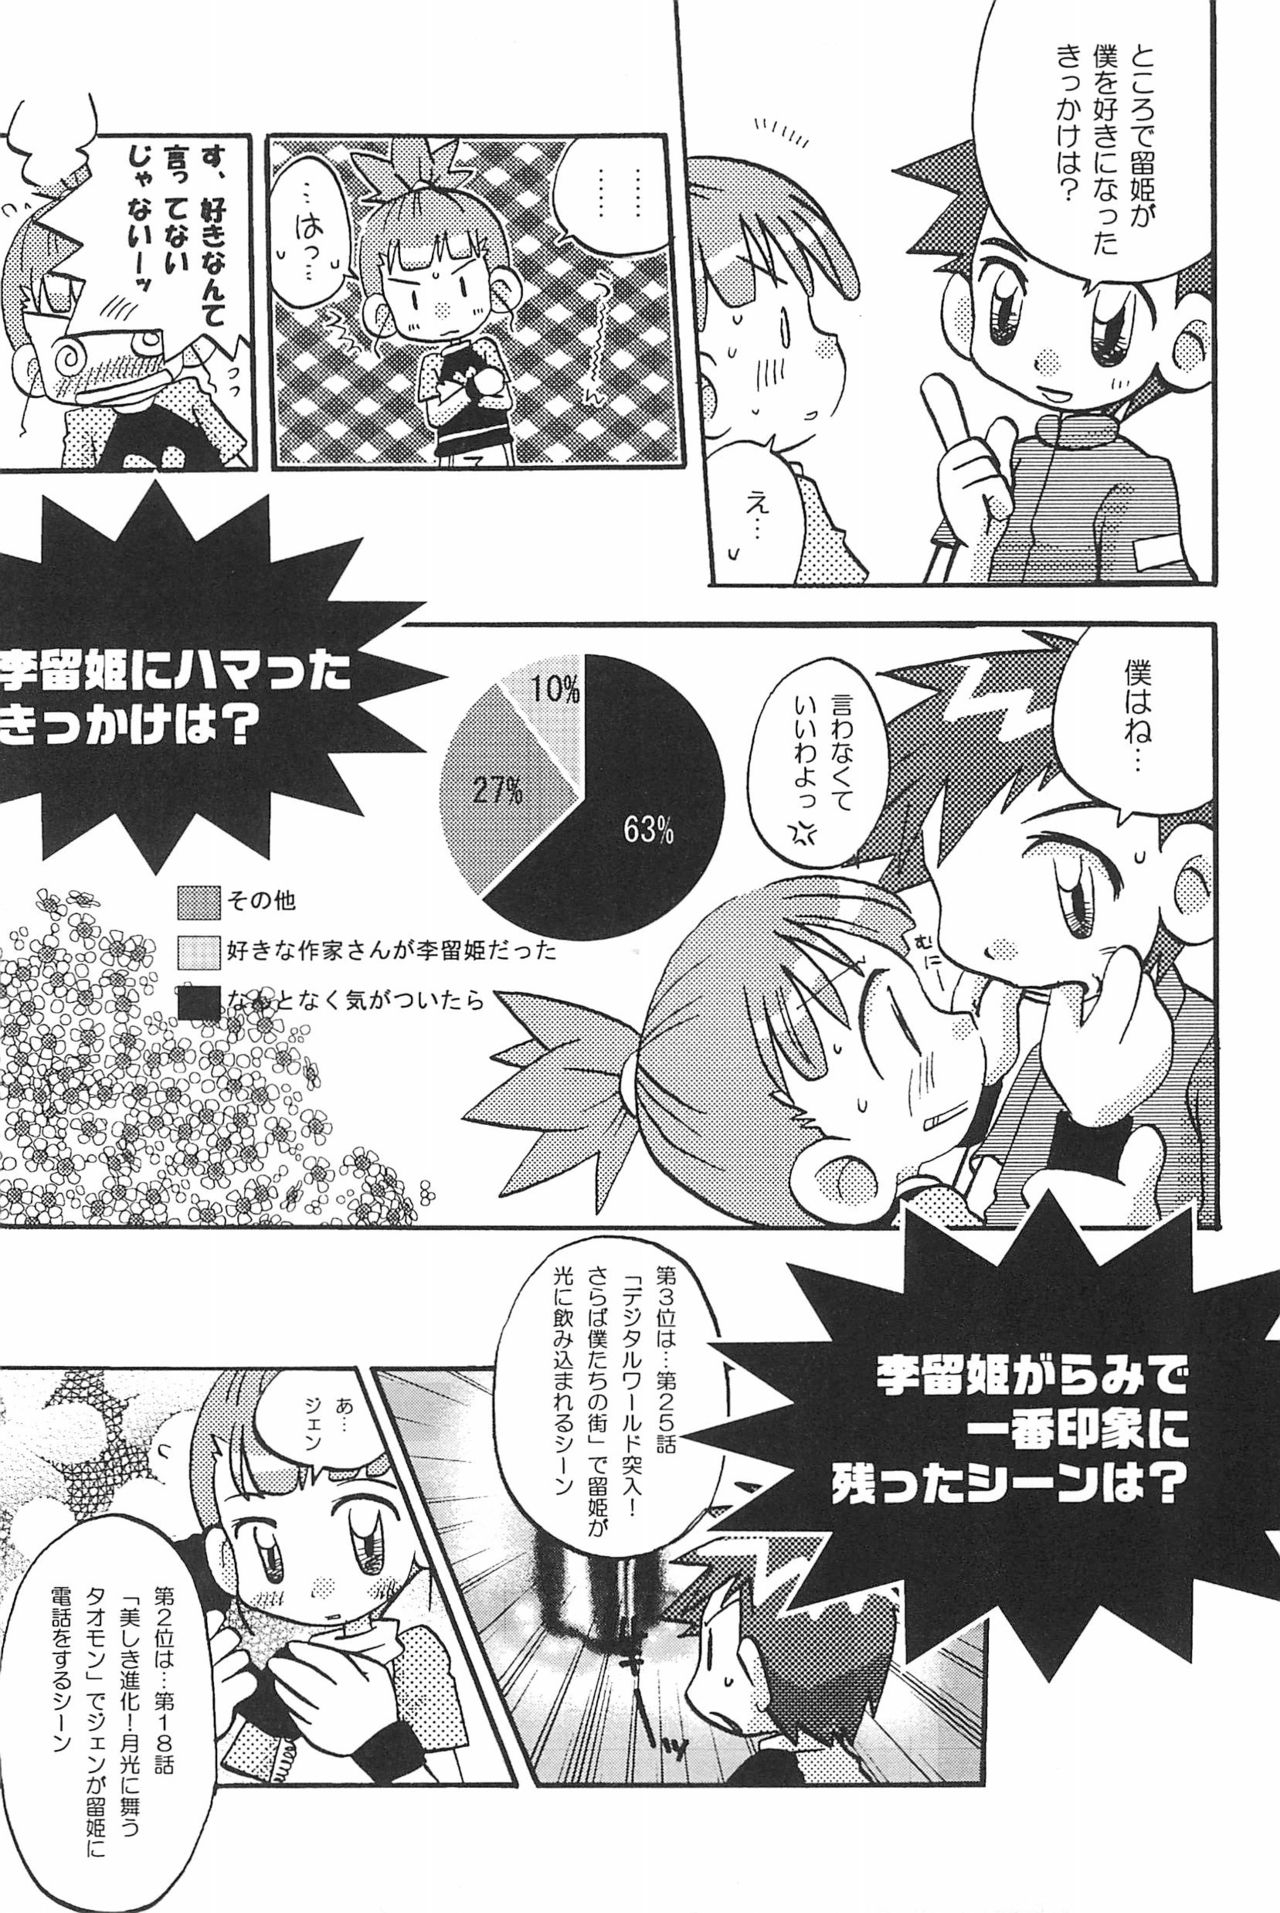 (SC15) [LeeRuki Anthology Jikkou Iinkai (Various)] LeeRuki Anthology J&R REPORT (Digimon Tamers) 42